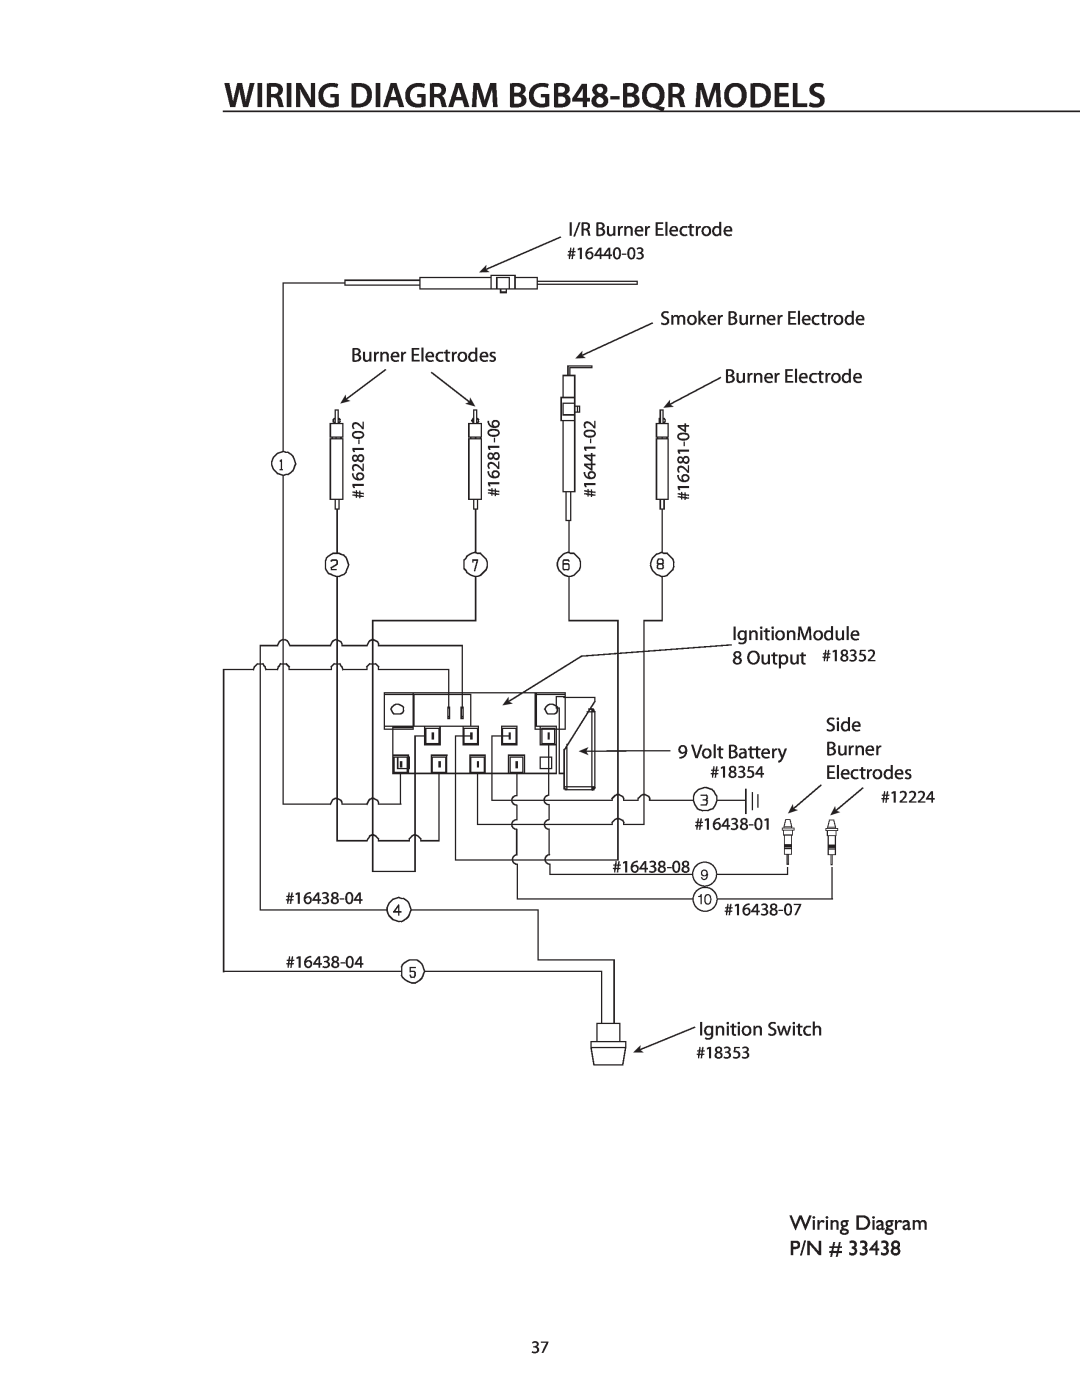 DCS BGB36-BQAR manual WIRING DIAGRAM BGB48-BQRMODELS, I/R Burner Electrode, Smoker Burner Electrode Burner Electrodes, Side 